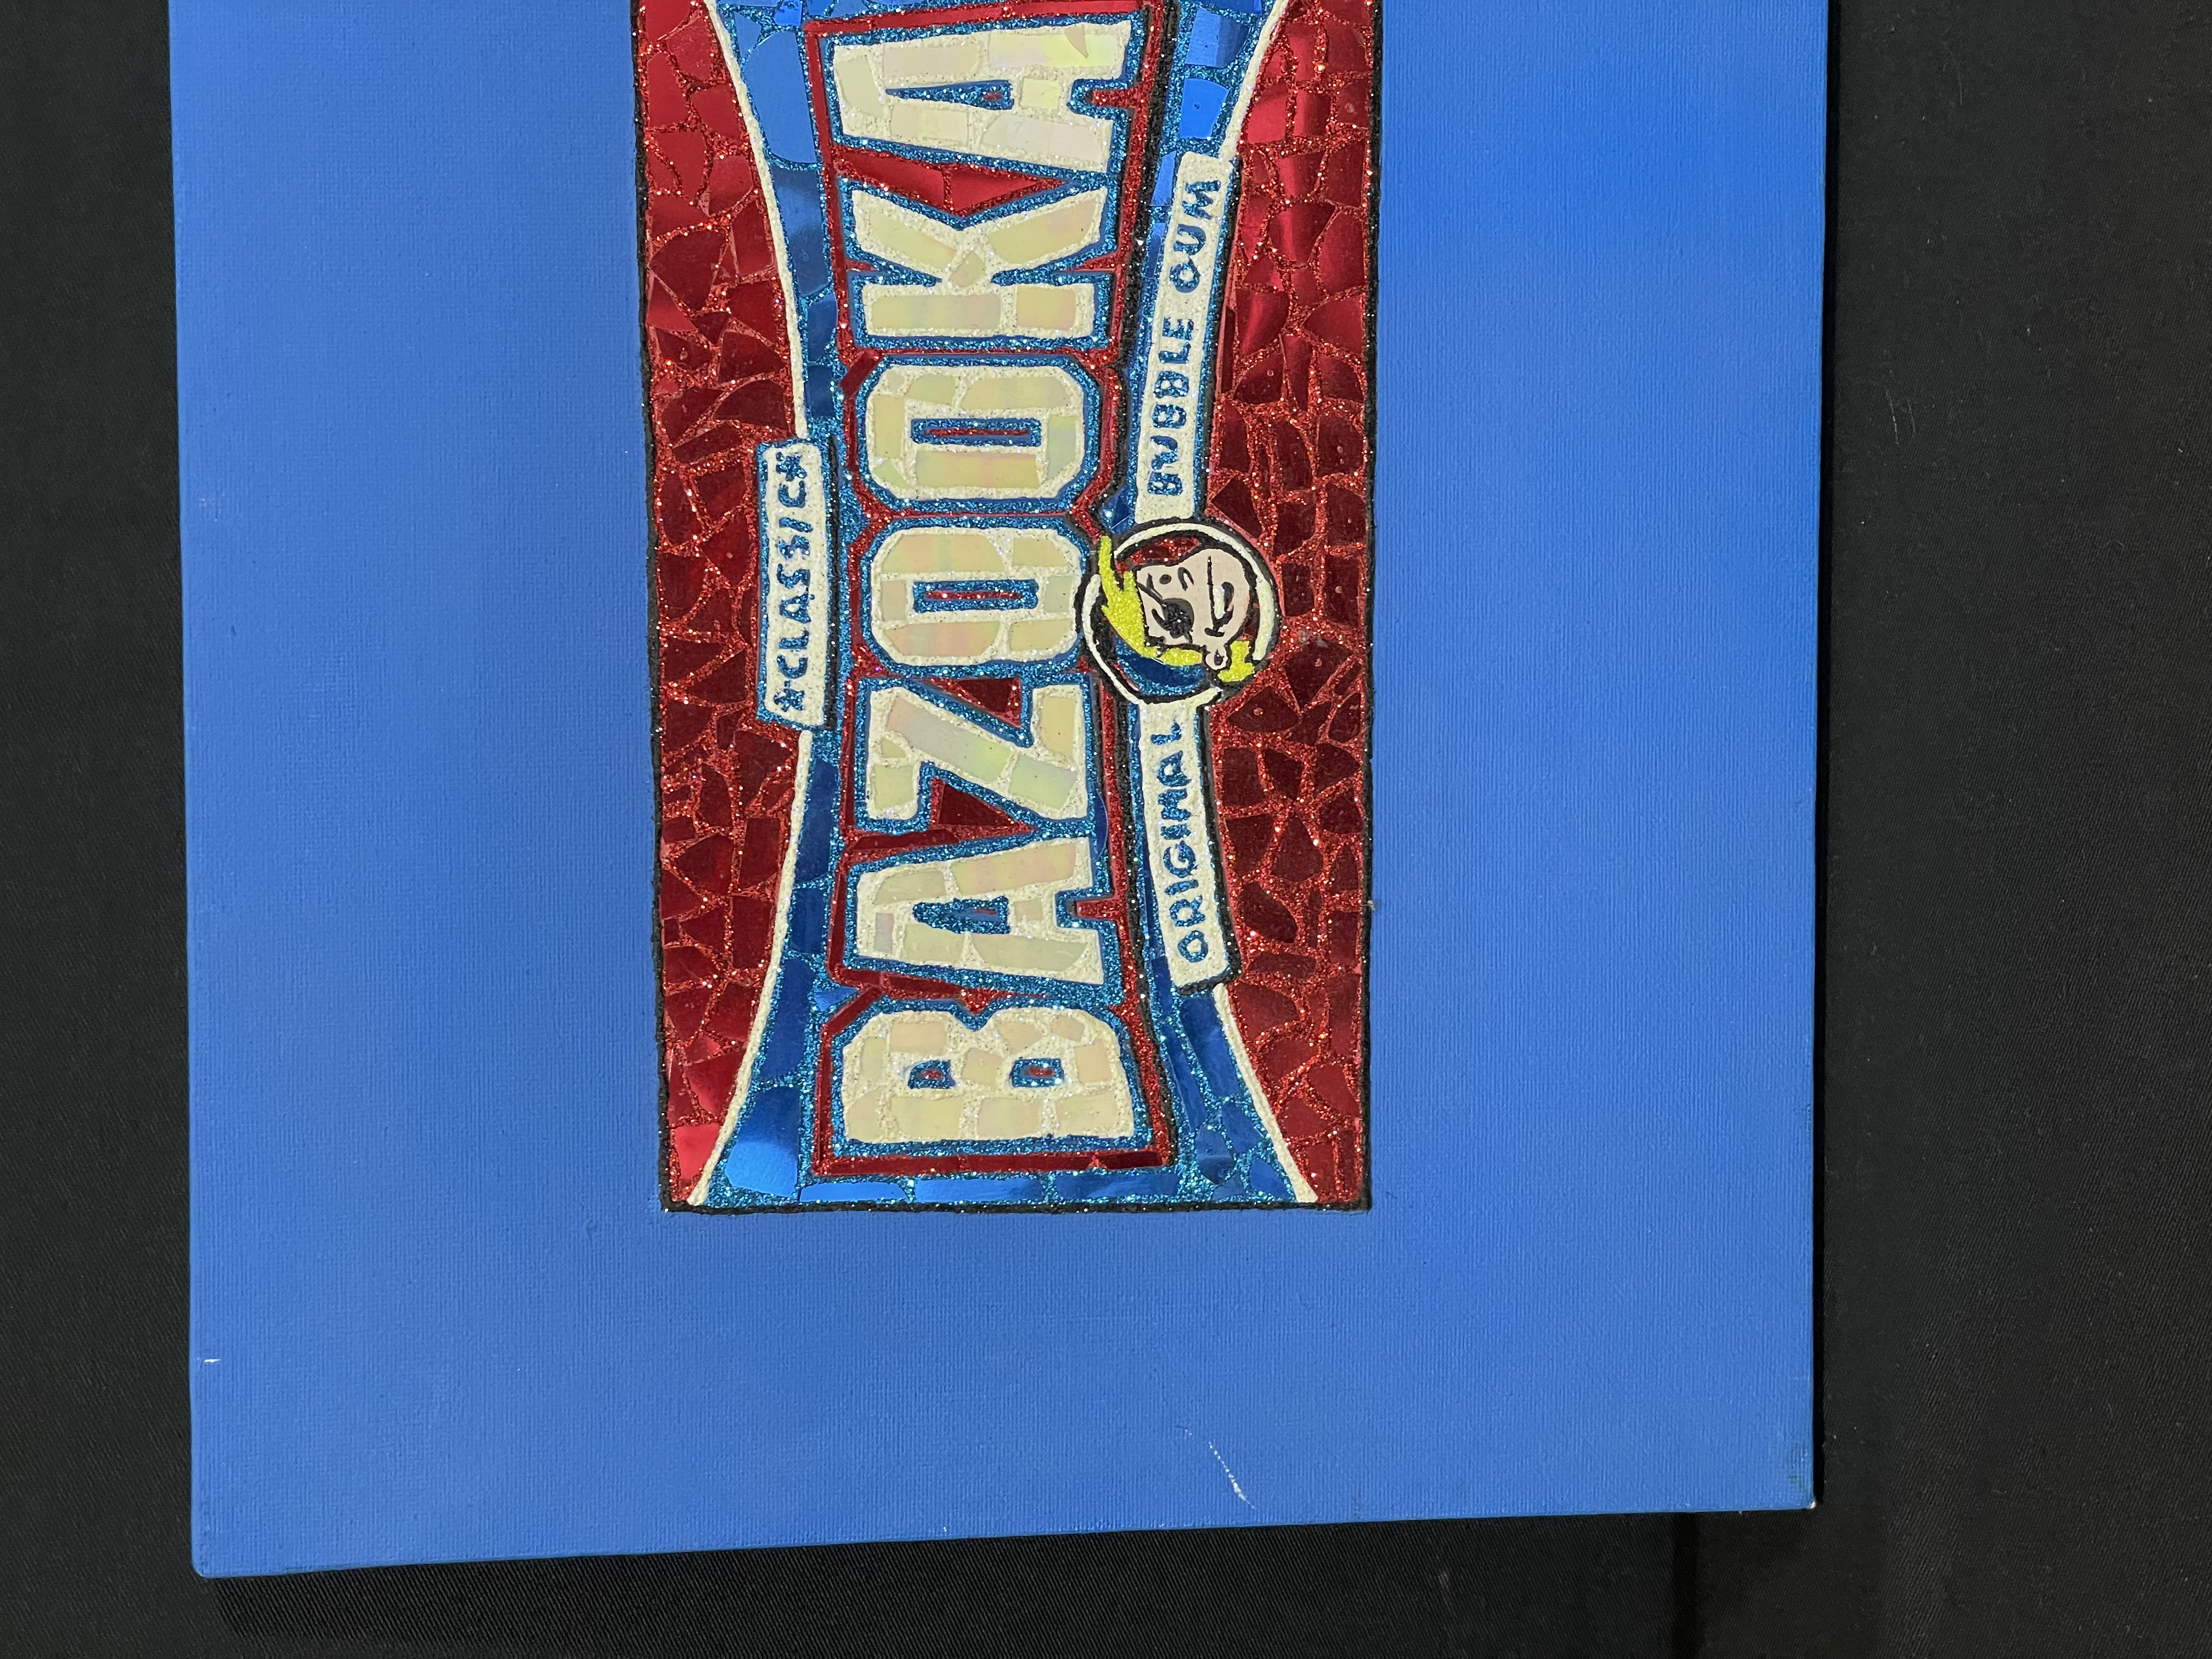 Joe Bazooka mixed media on canvas by Marty Thornton. - Image 2 of 8